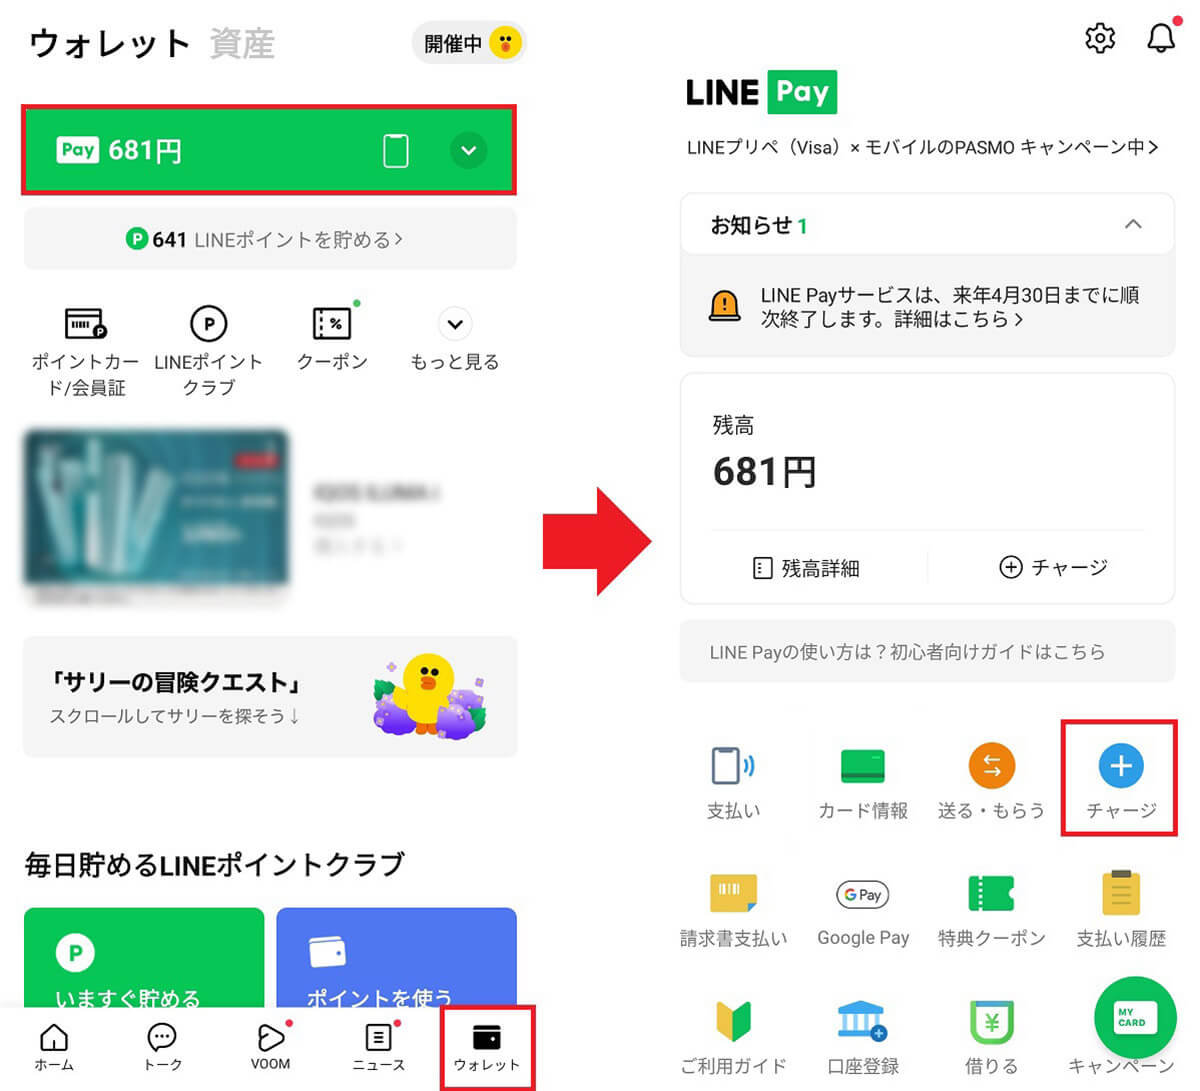 PayPay銀行からLINE Pay残高にチャージする手順1